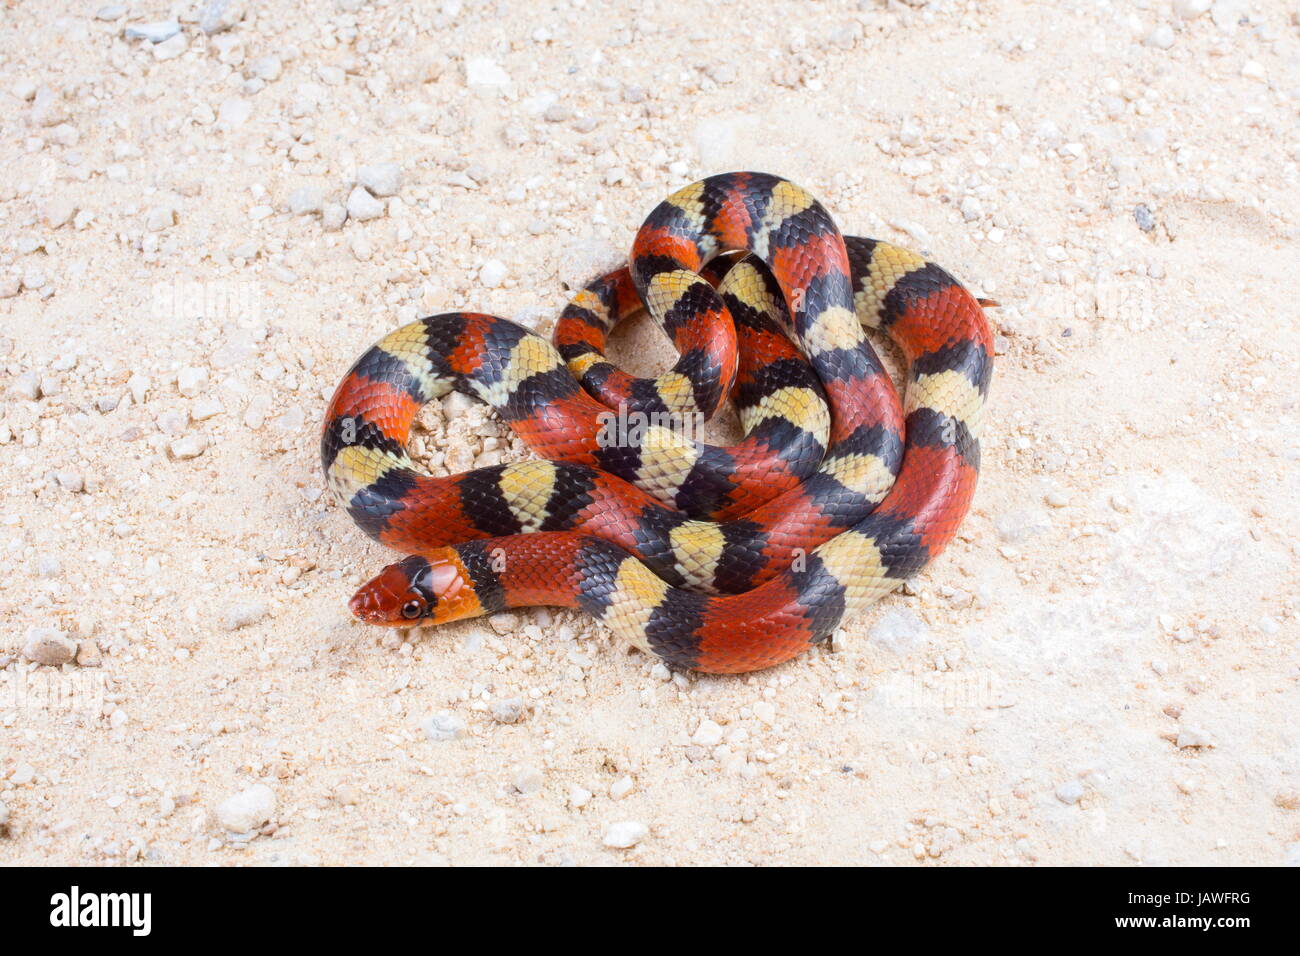 A coiled scarlet snake, Cemophora coccinea. Stock Photo